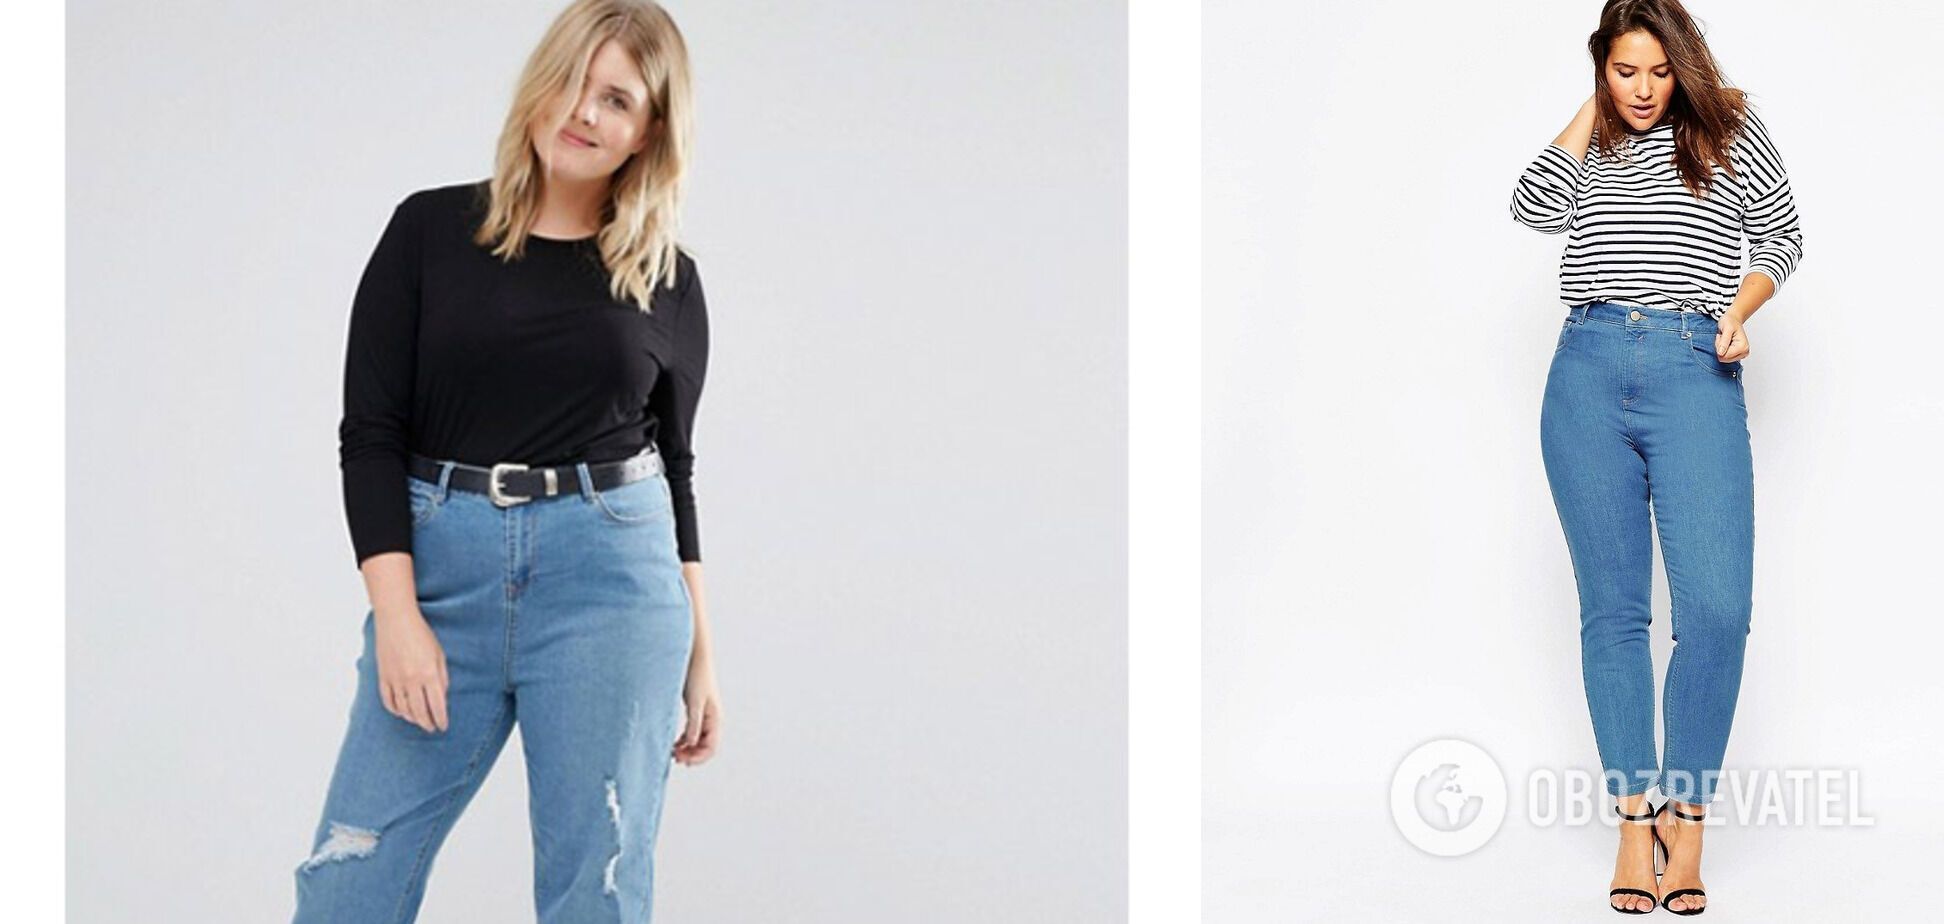 Никогда не покупайте такие: названы модели джинсов, которые сильно полнят. Фото 